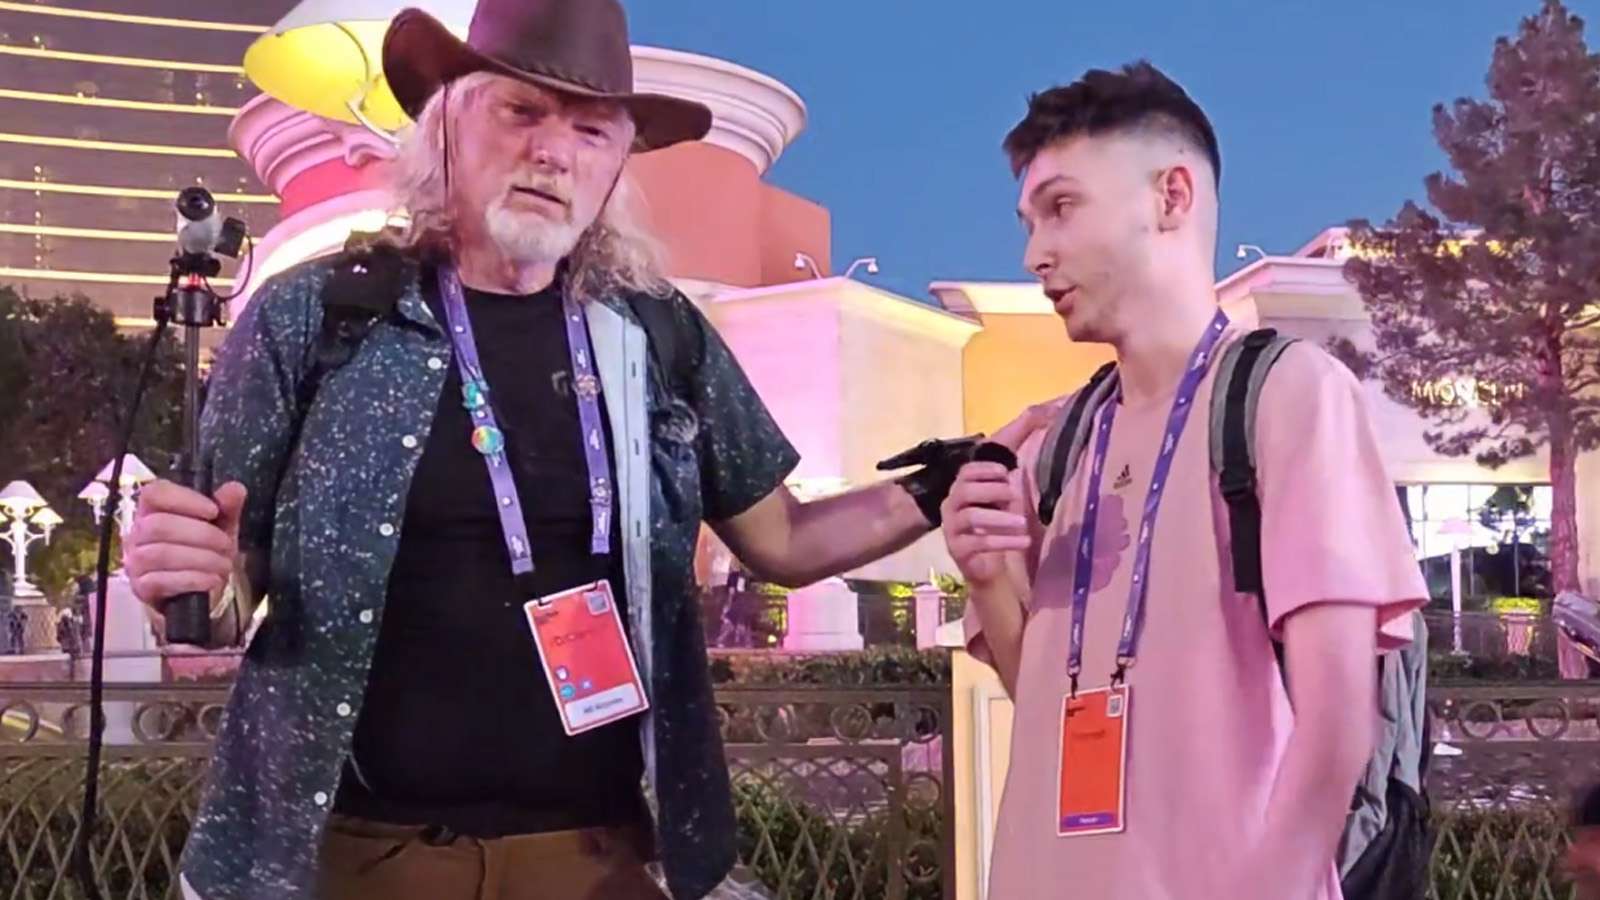 Twitch CEO randomly appears on Kick stream in Las Vegas